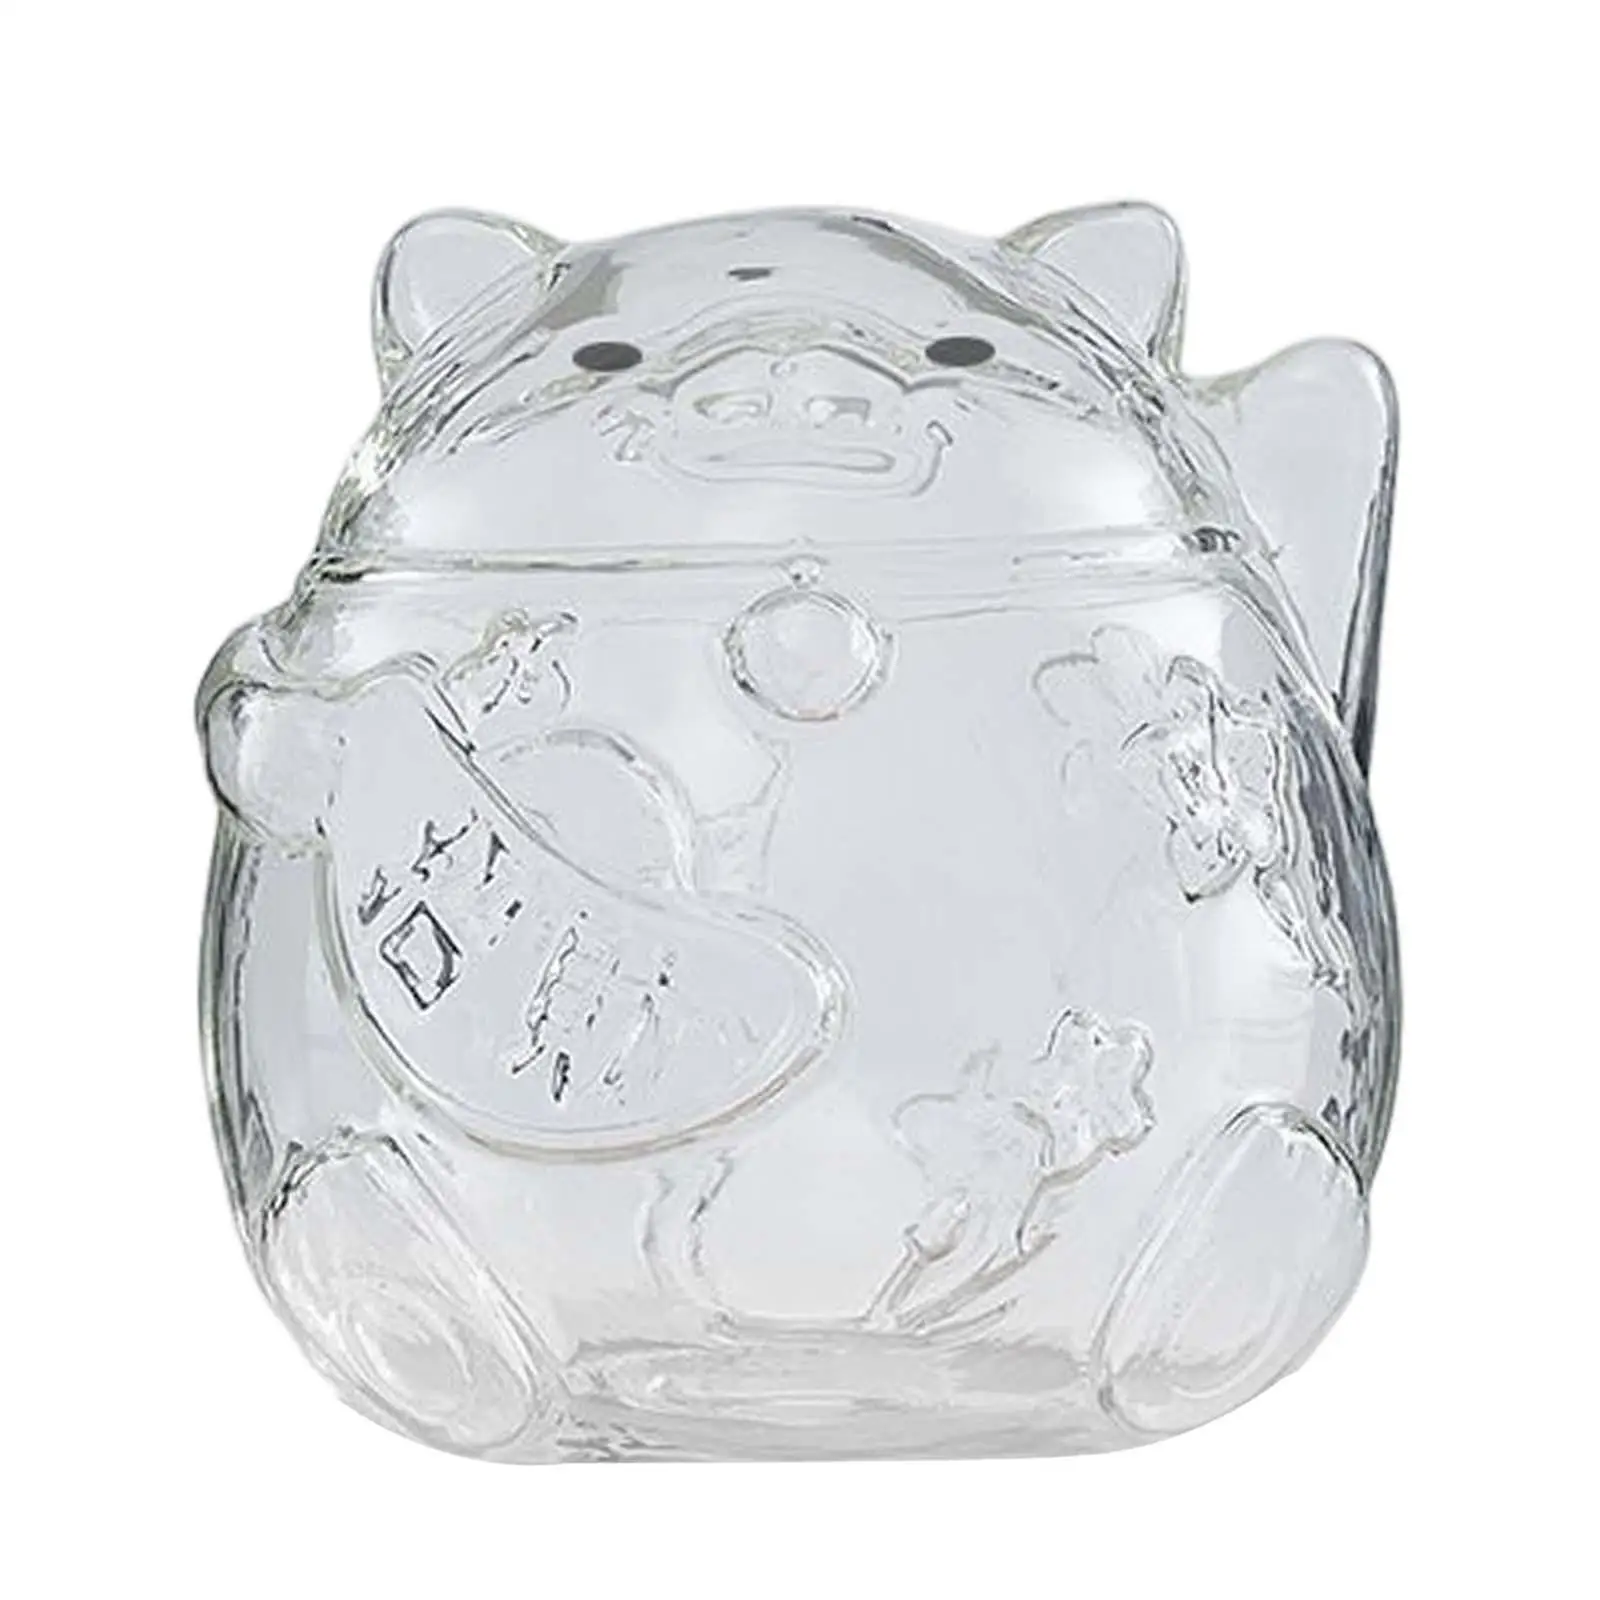 Clear Lucky Cat Piggy Bank Money Box Ornaments Glass for Girls Gift Children